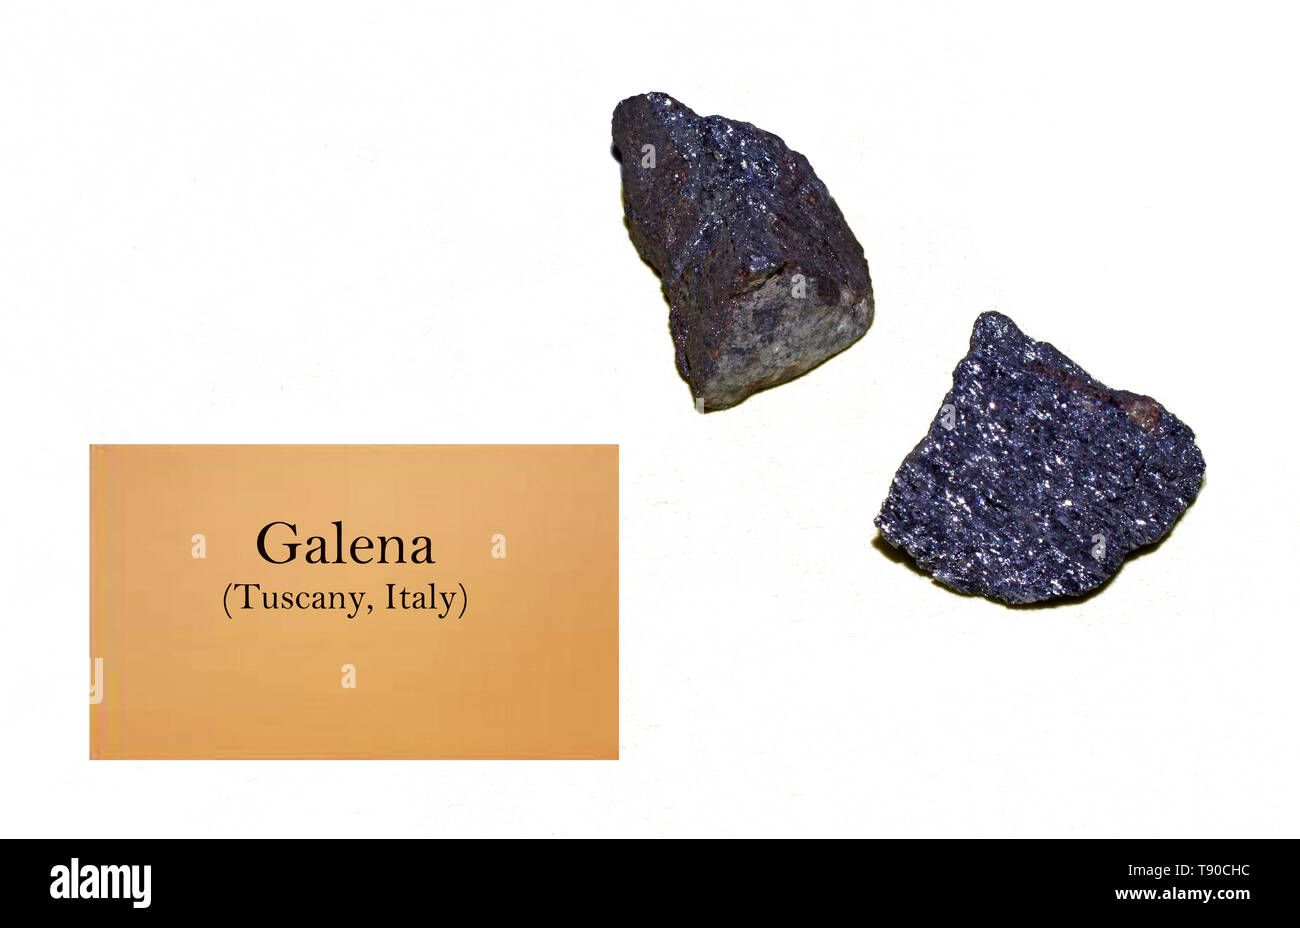 Galena rock of Tuscany, Italy close-up Stock Photo